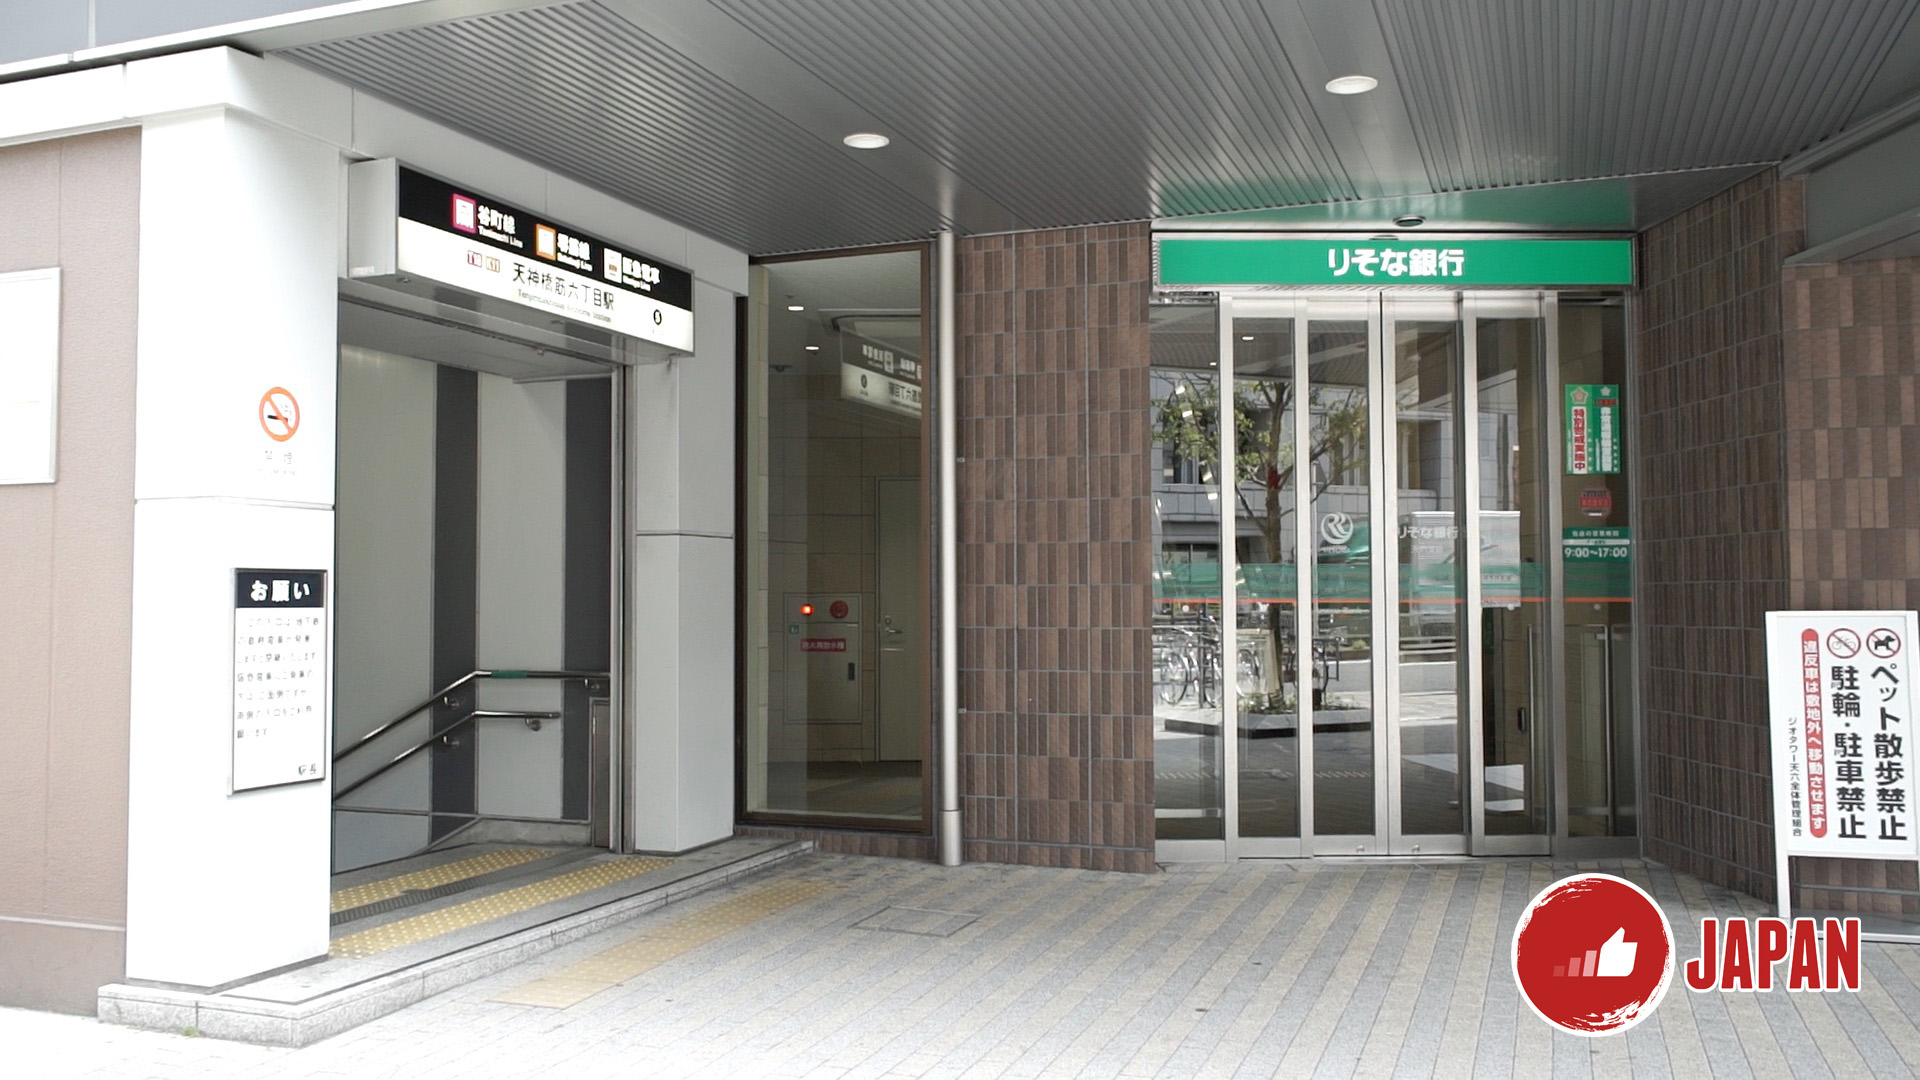 【大阪旅遊】大阪周遊卡免費景點推介3－天然溫泉 浪速之湯